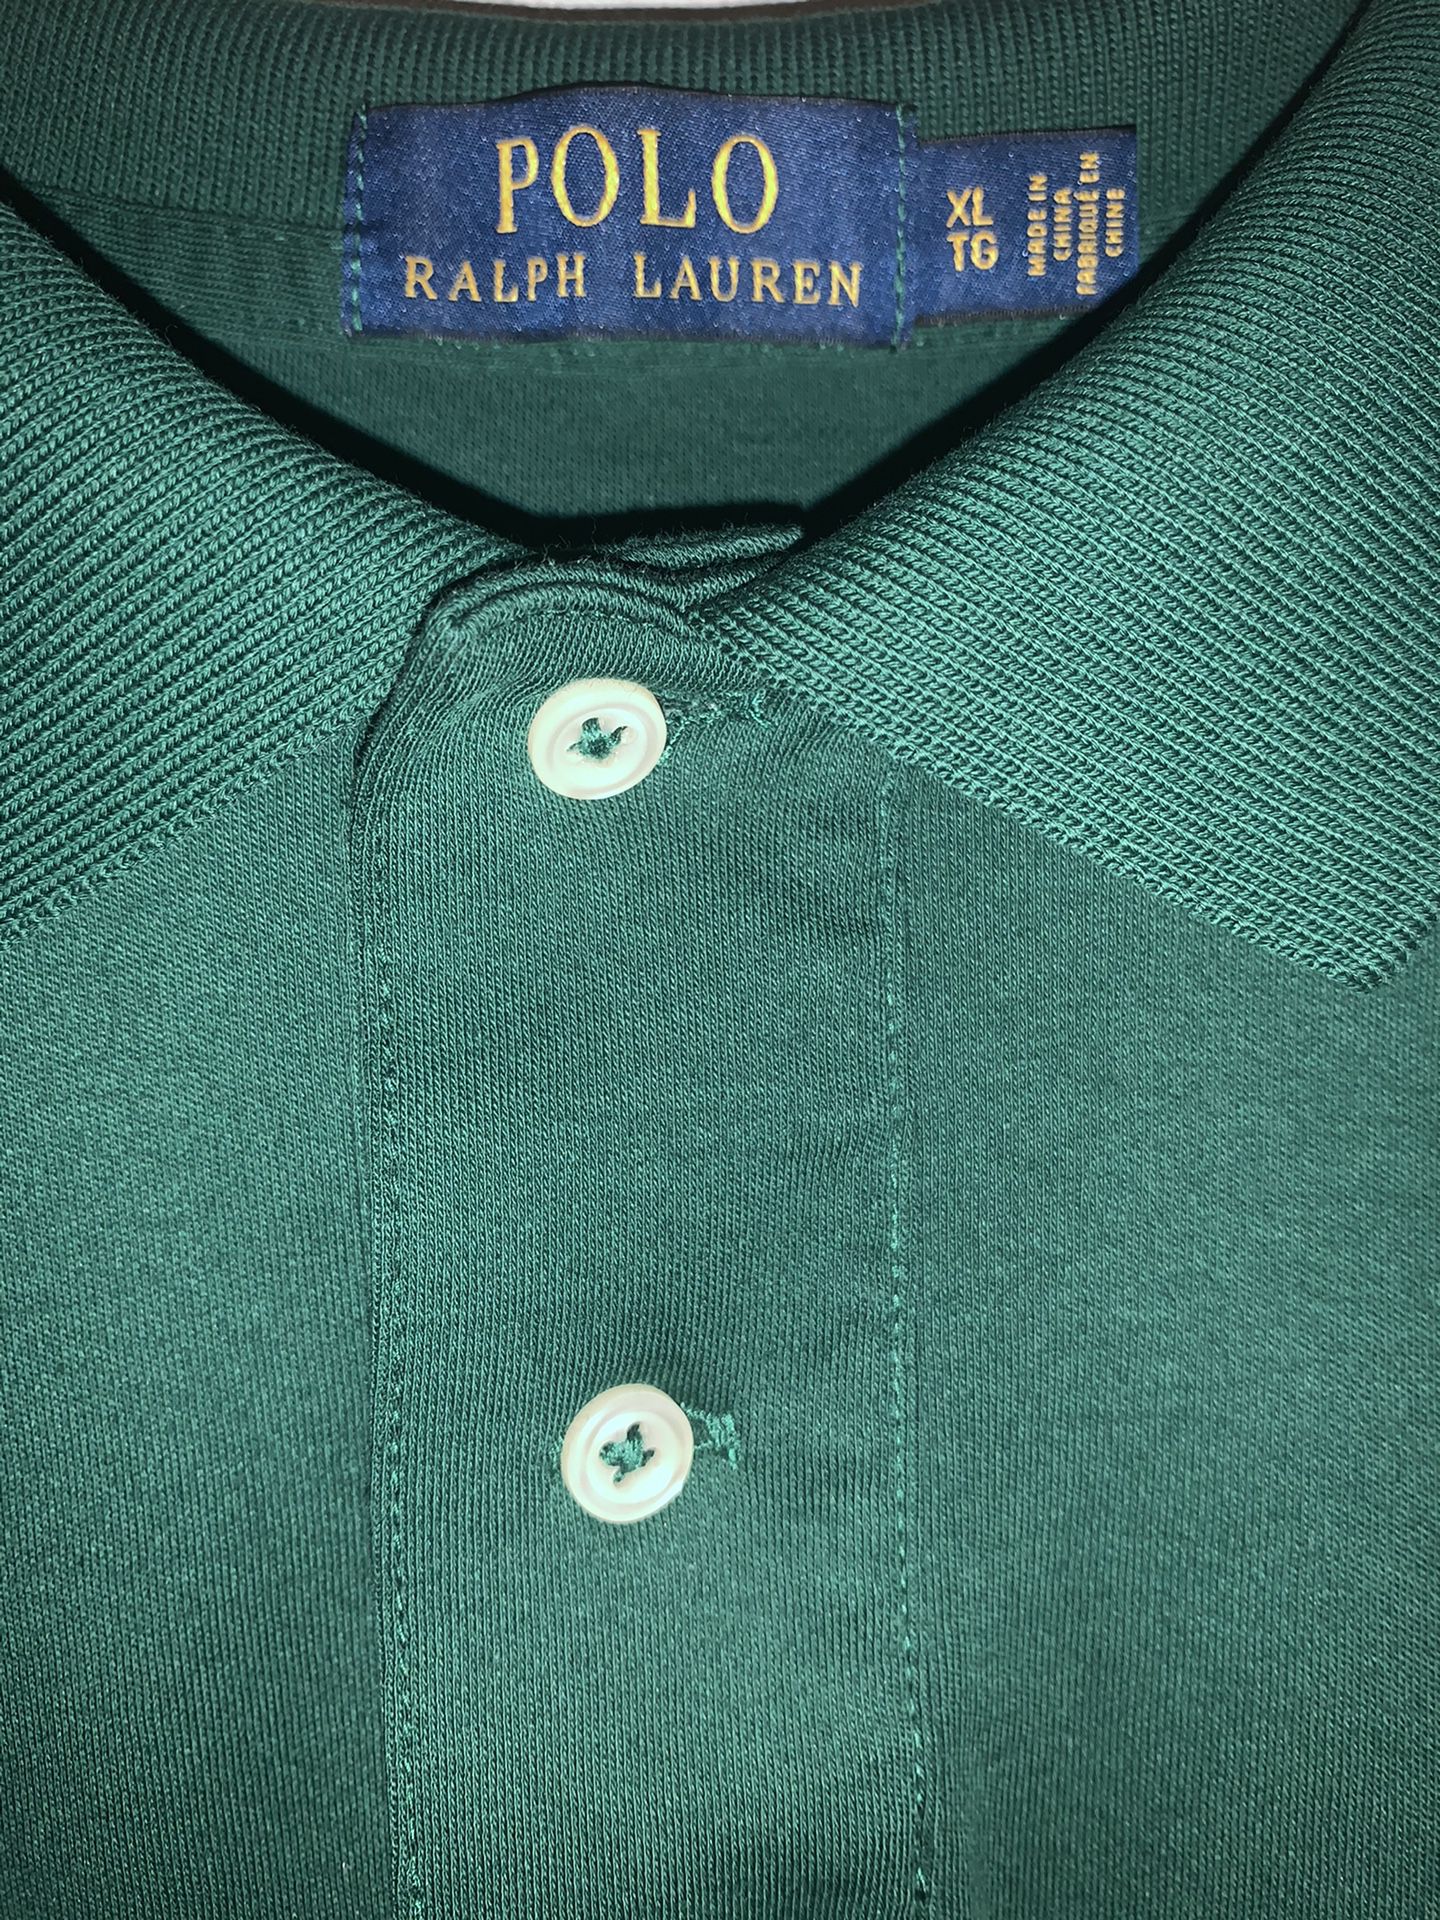 Polo Ralph Lauren green shirt